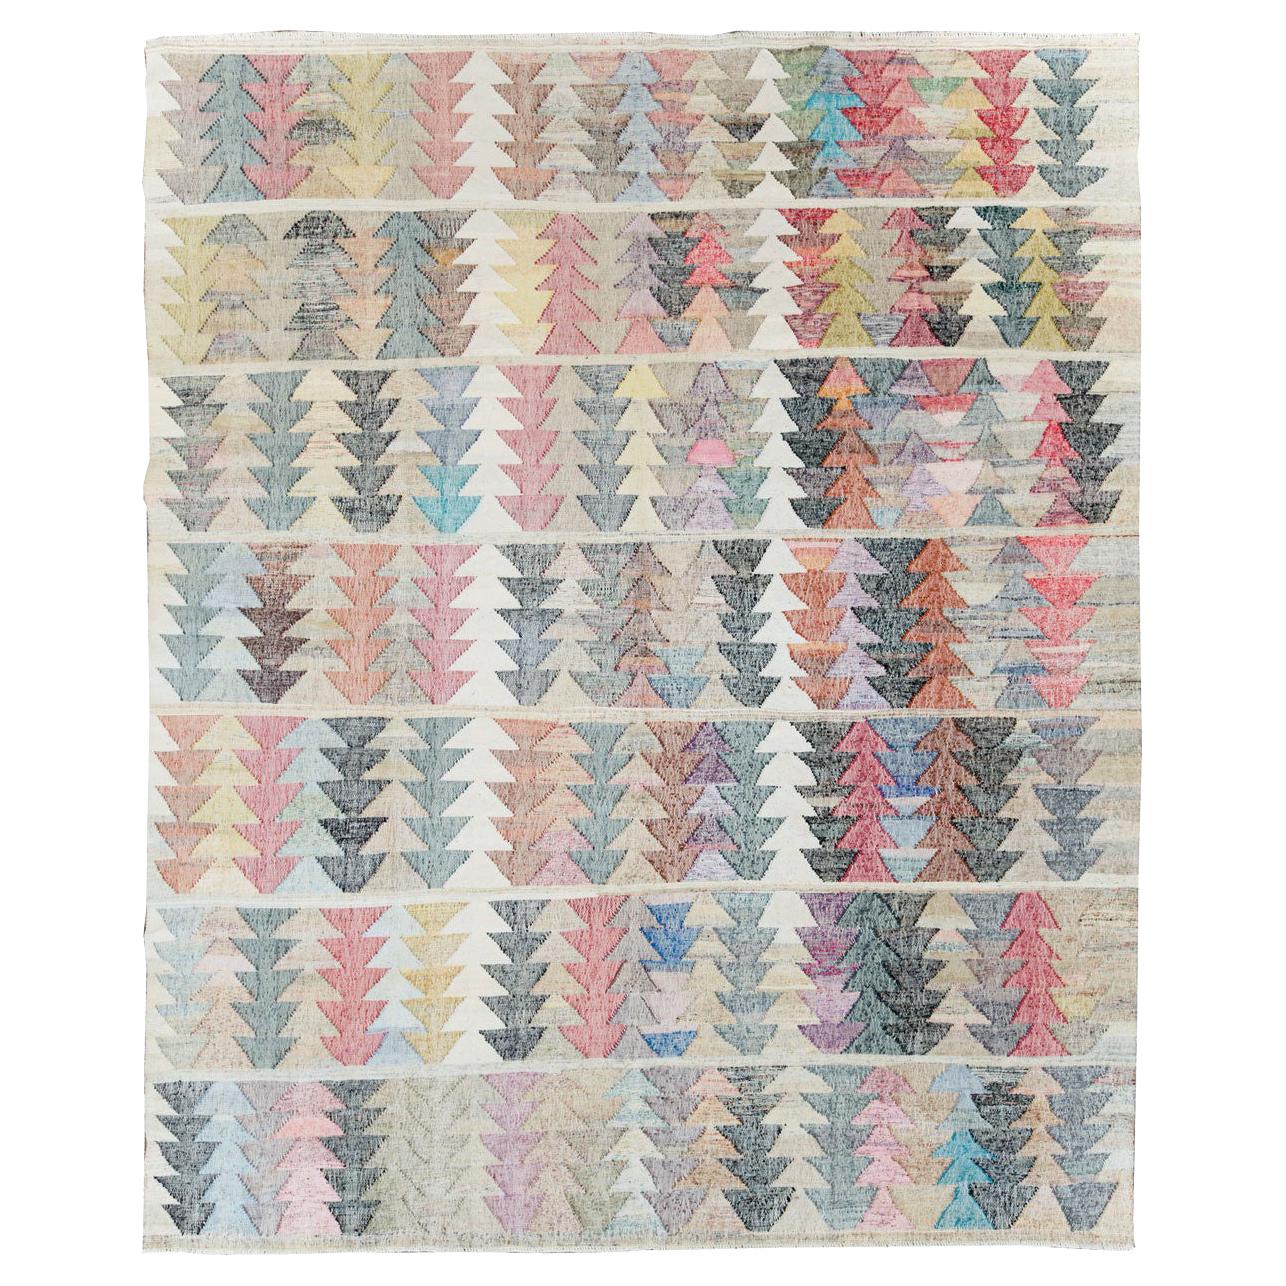 Bunter zeitgenössischer handgefertigter türkischer flachgewebter Kelim-Teppich in Zimmergröße in bunten Farben